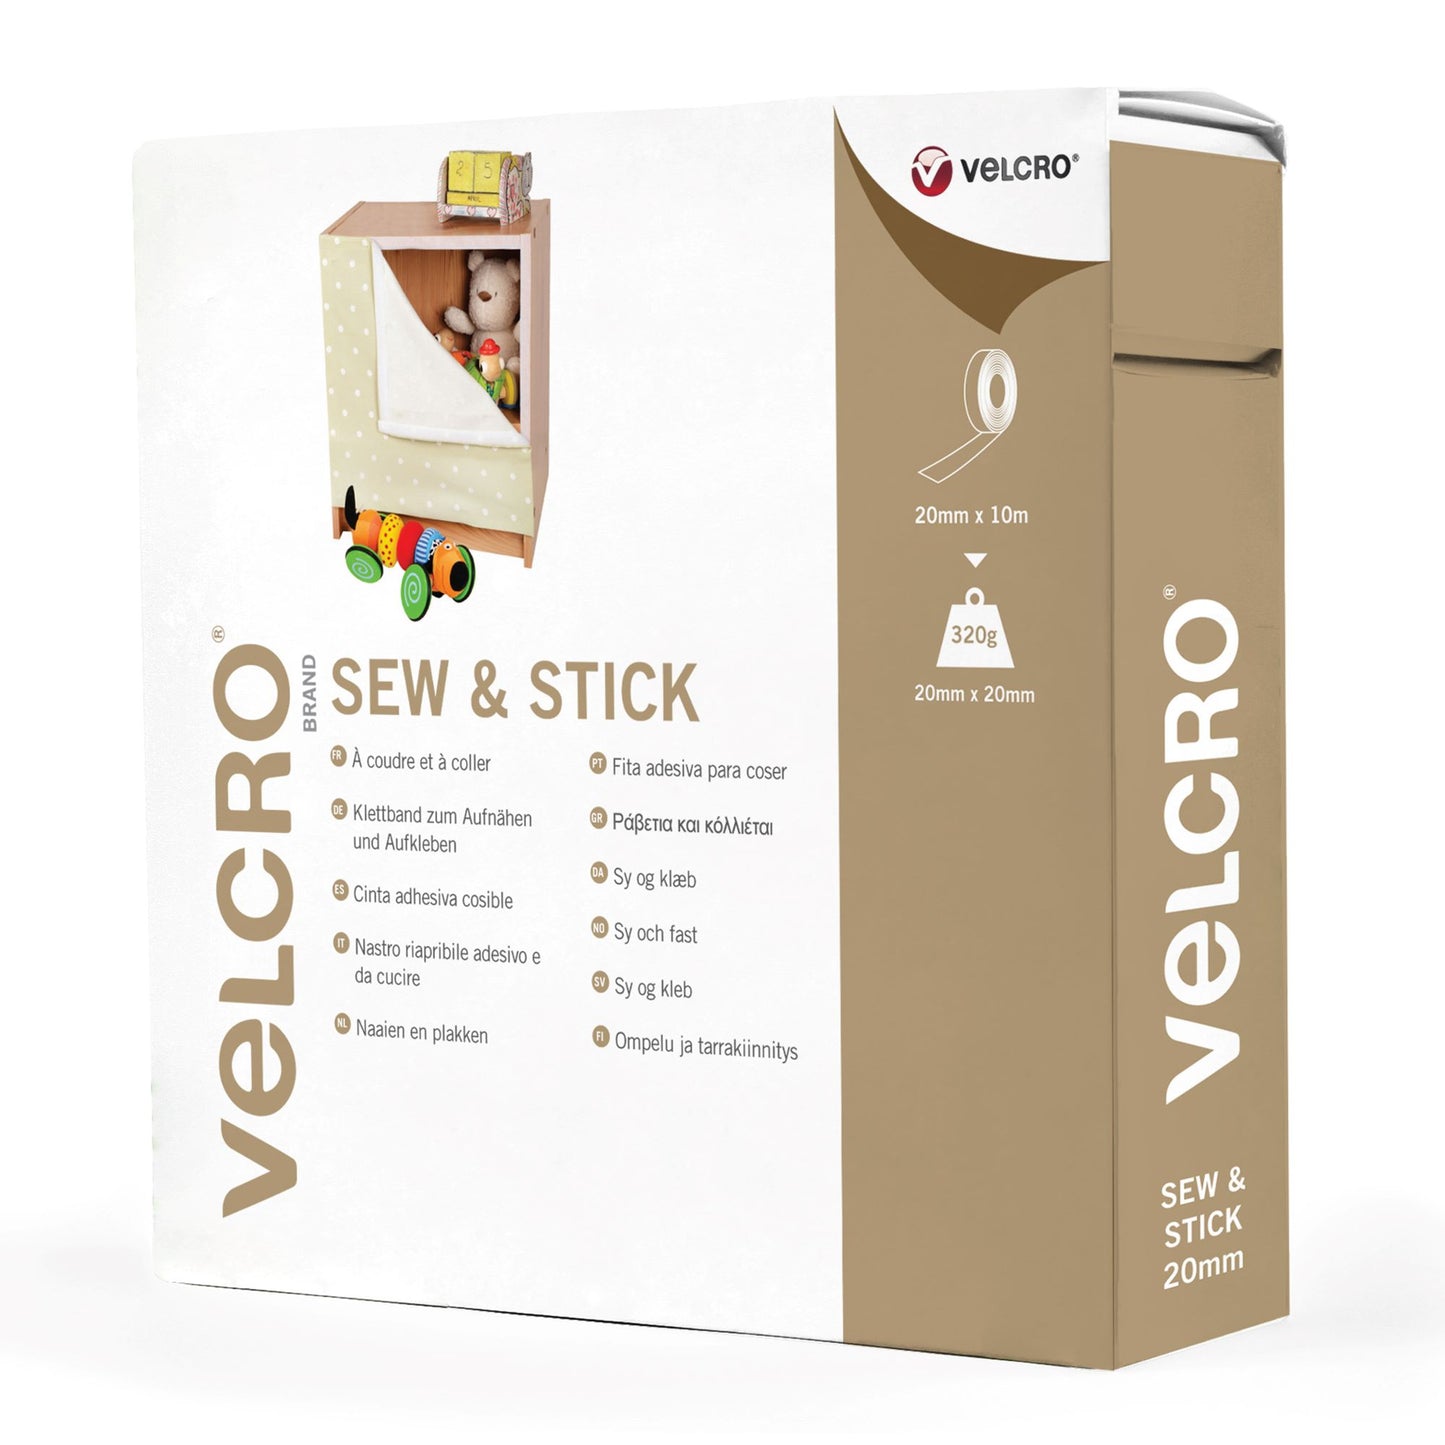 Velcro: Sew & Stick: 10m x 20mm